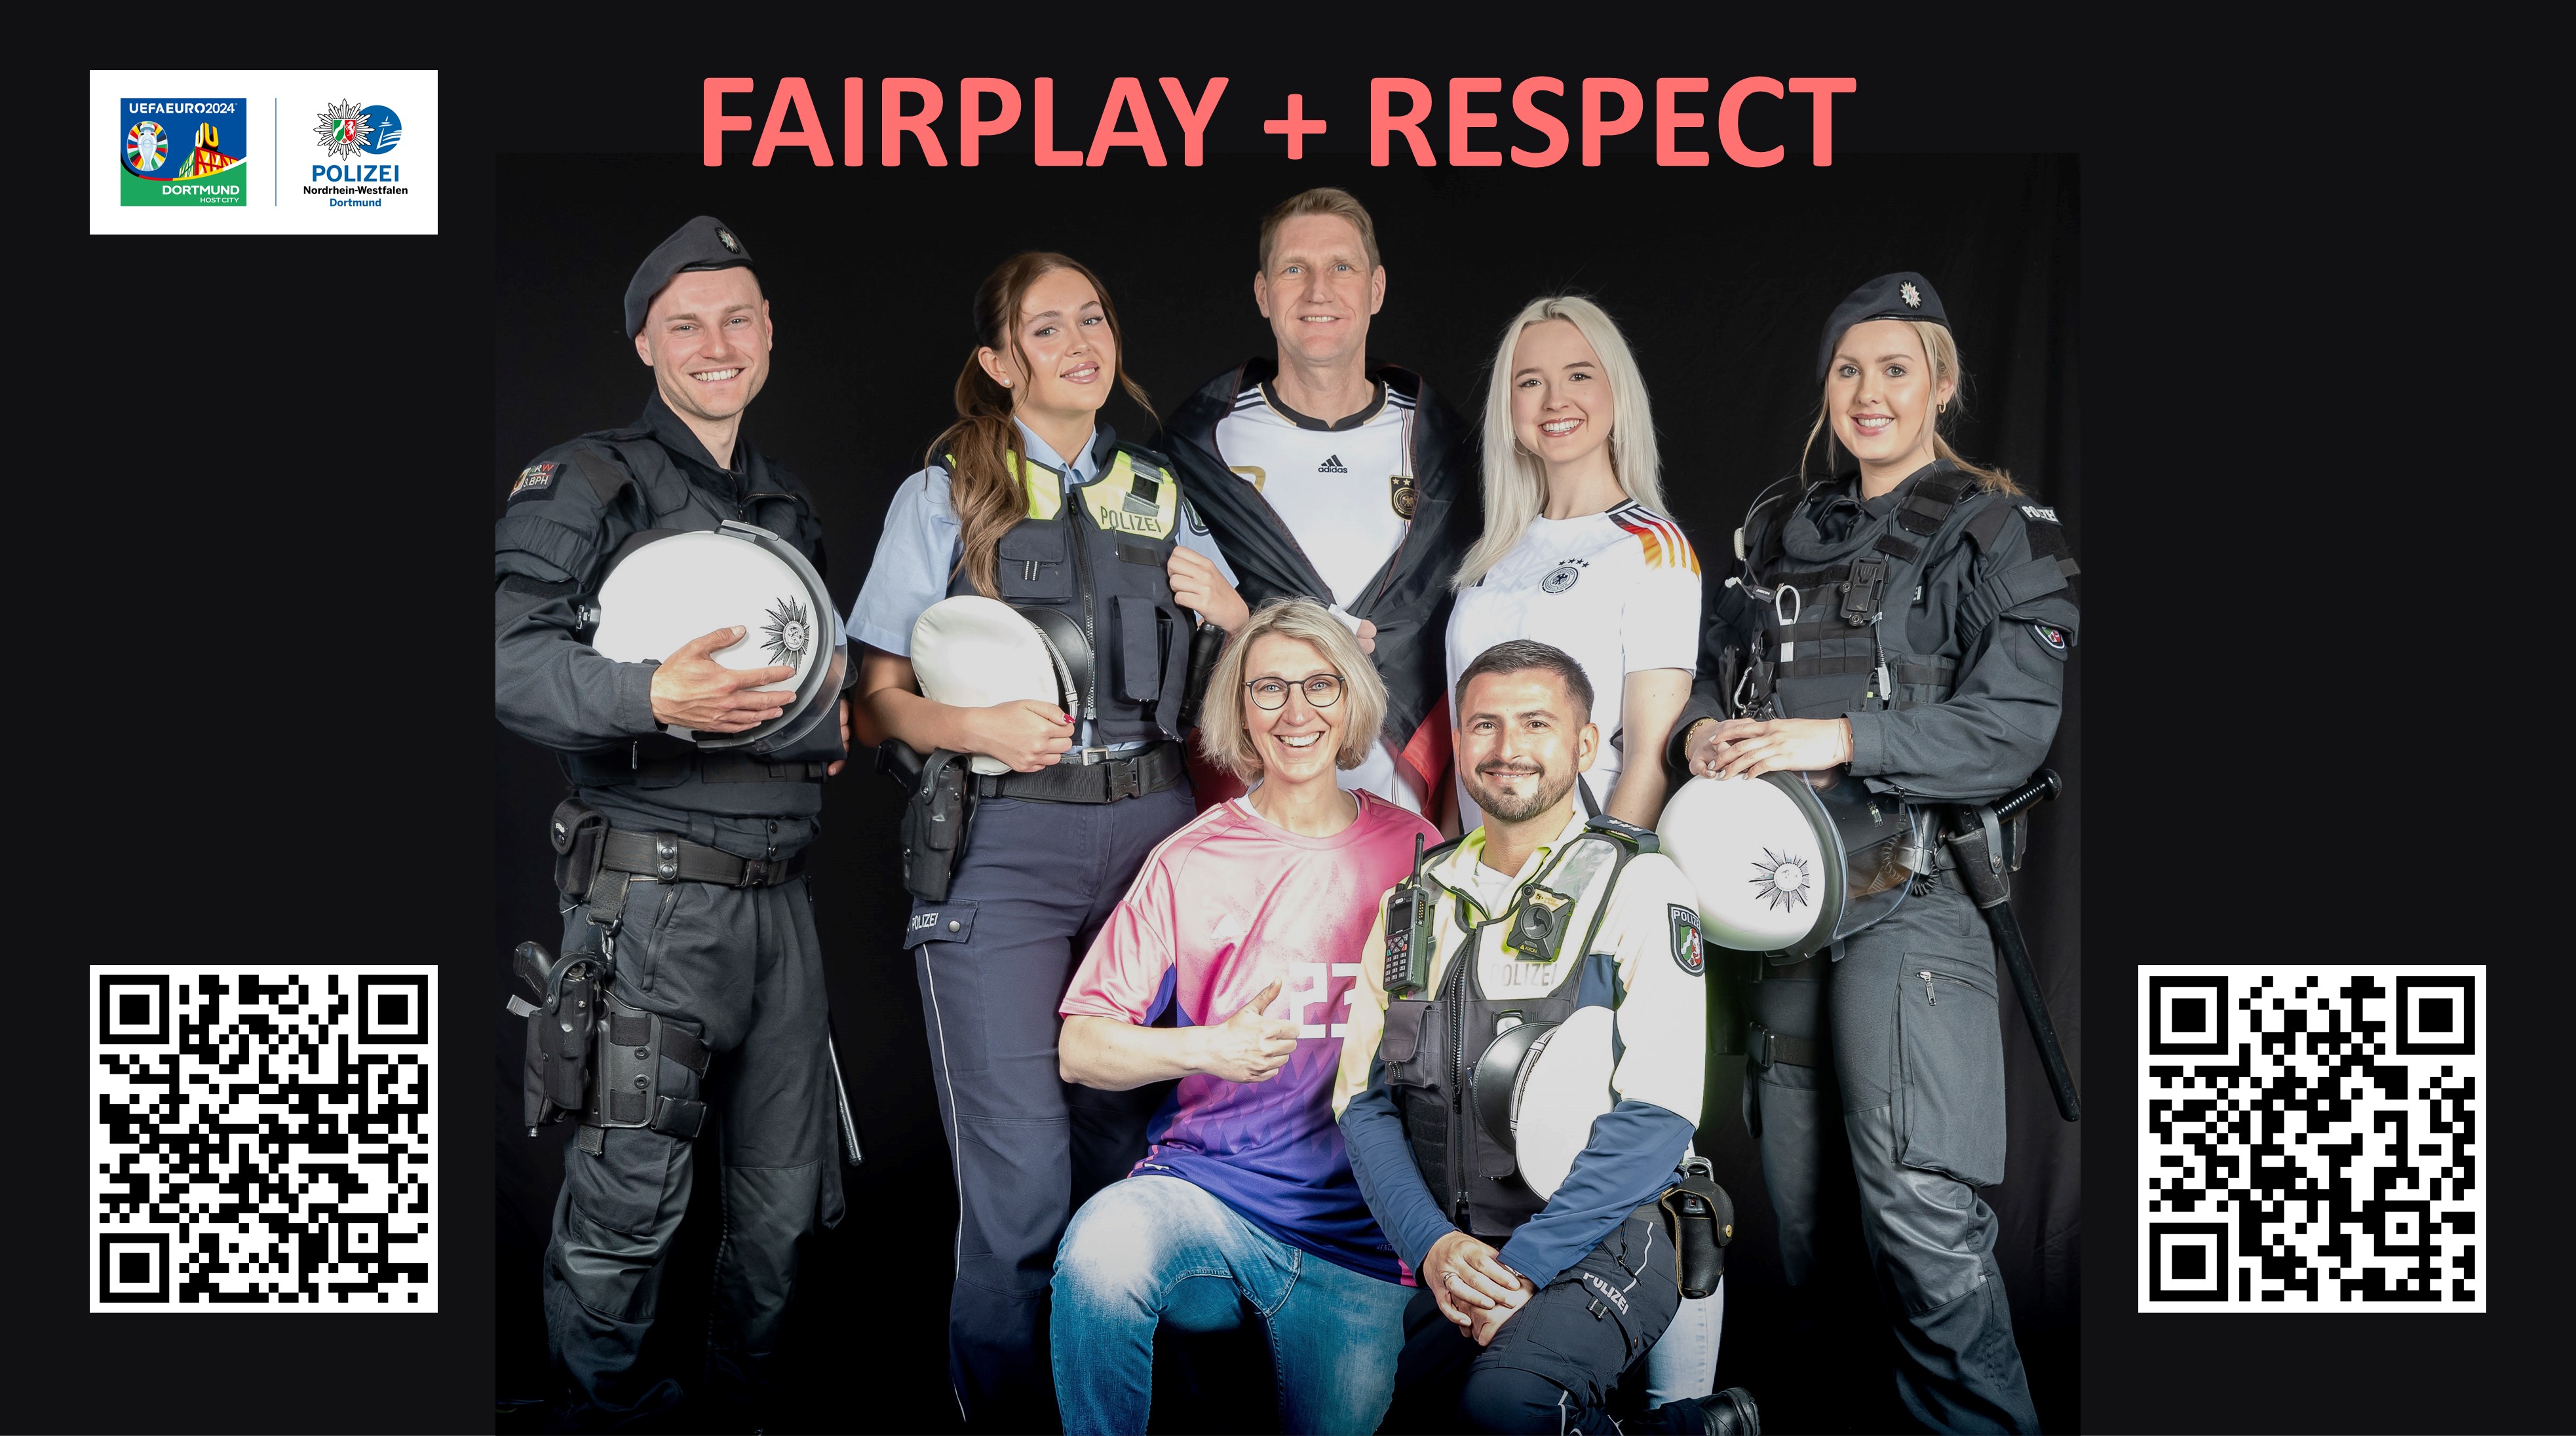 FAIRPLAY + RESPECT